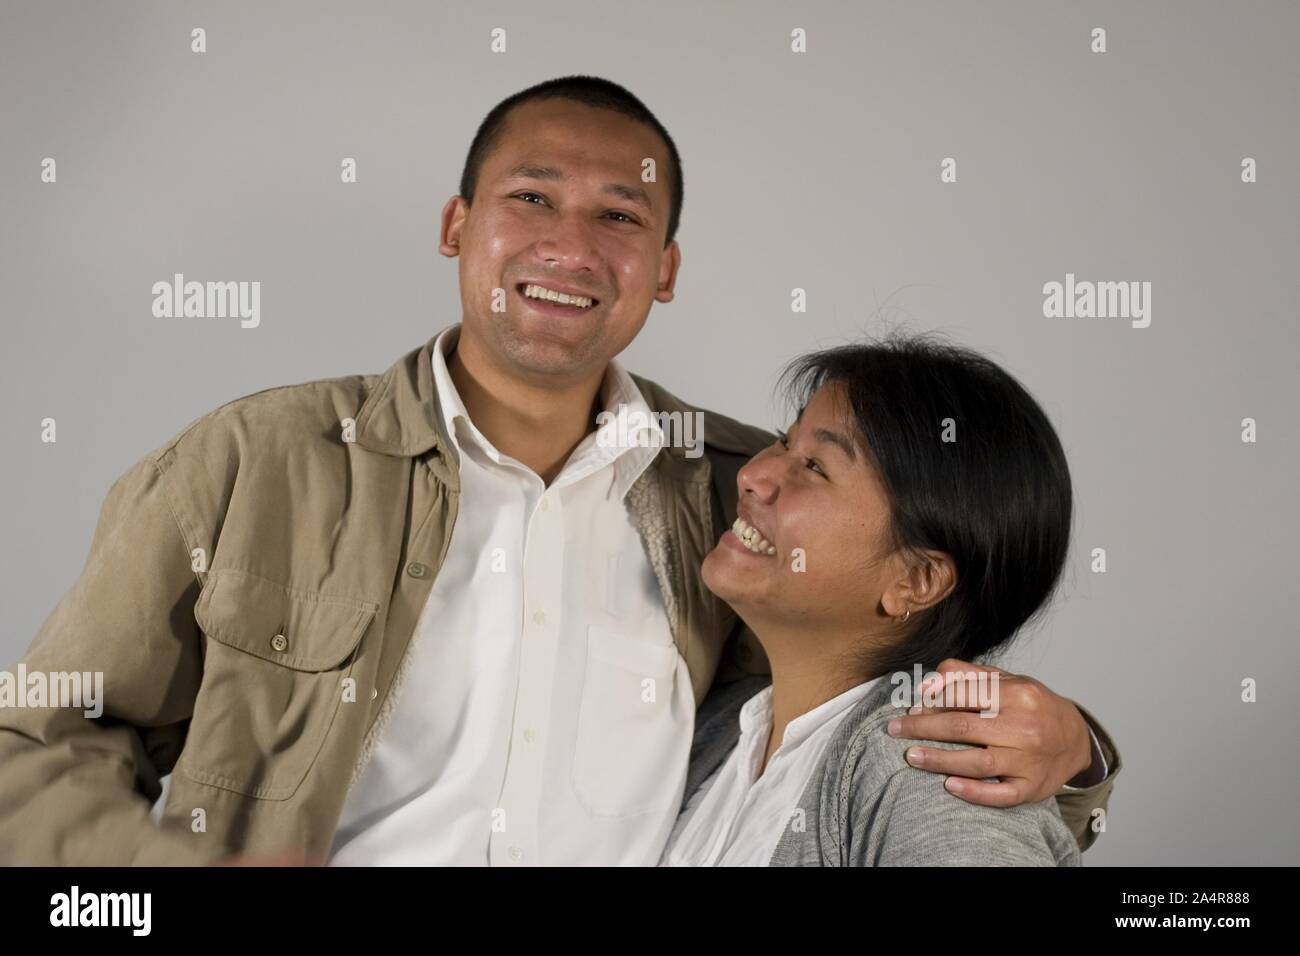 Modello di Rilascio n.: 040.Aradhana Gurung e Suman Shrestha che sono stati insieme per 2 anni e il piano di sposarsi in un anno. Il loro sarebbe un matrimonio intercaste che sta lentamente diventando sempre più comune in nepalese impostazioni urbana, ma ancora pone una serie di sfide sociali. Novembre 29, 2007, Kathmandu, Nepal. Foto Stock